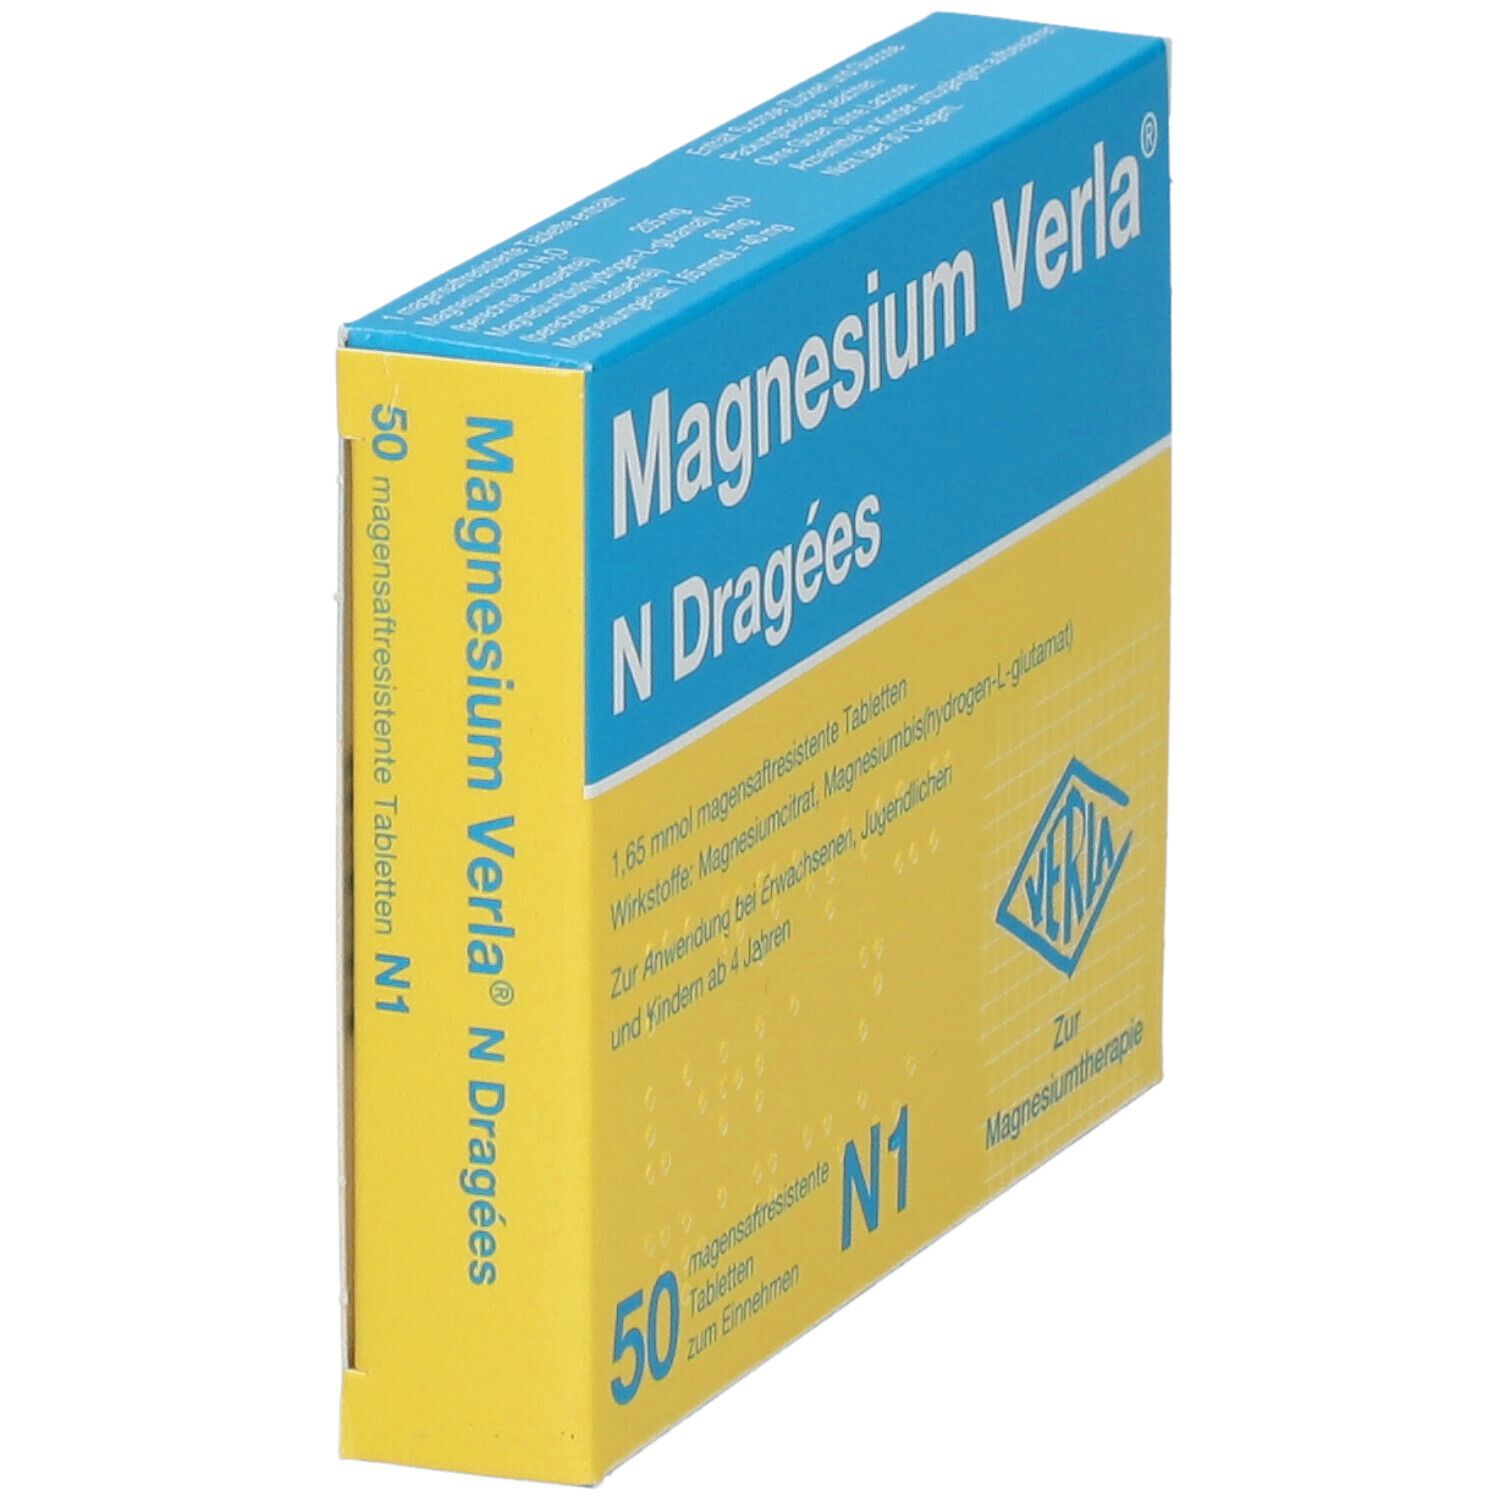 Magnesium Verla® N Dragées